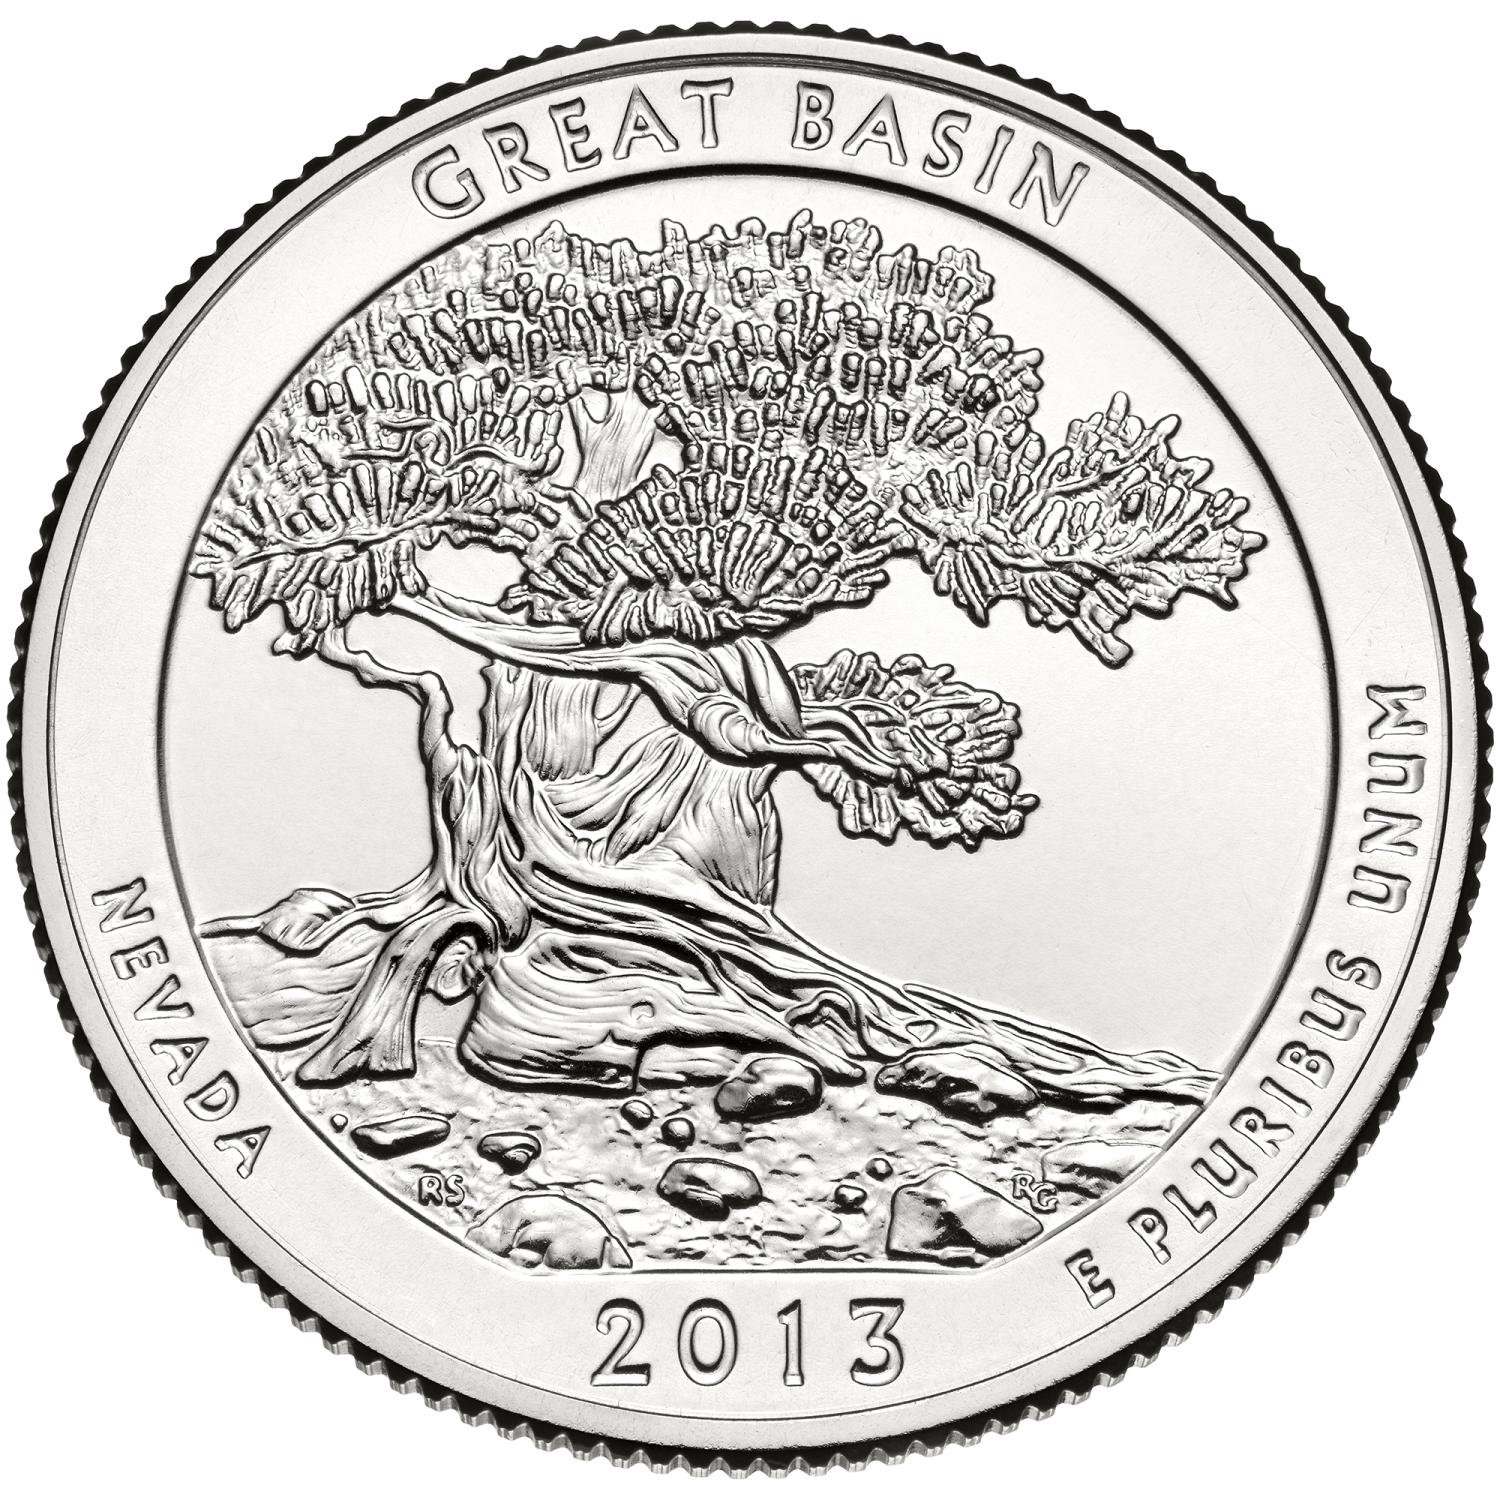 Quarter Dollar Commémorative des Etats-Unis 2013 - Great Basin National Park